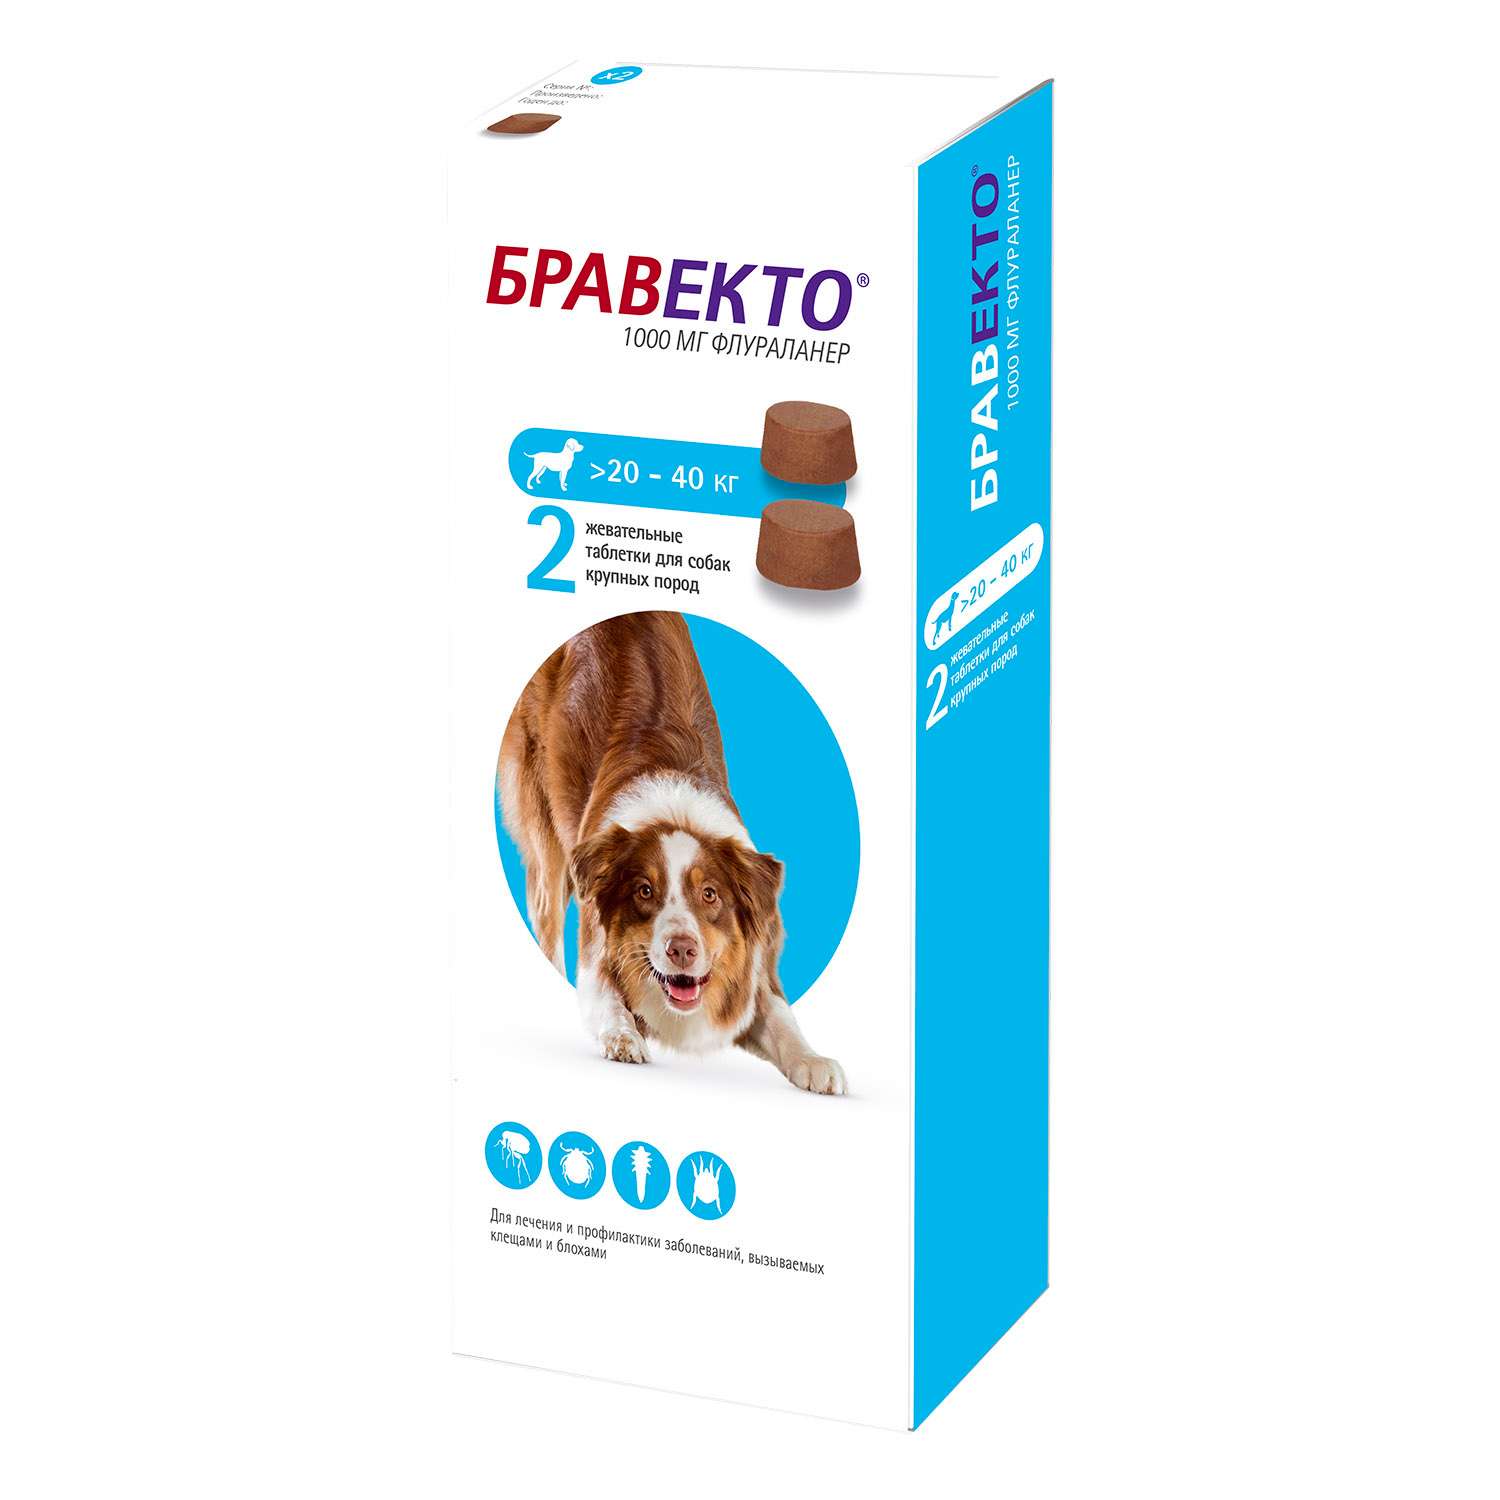 Бравекто для собак от чего. Бравекто для собак 20-40 кг таблетки. Бравекто (Bravecto) 20-40 кг, таблетка 1000 мг. Бравекто 1000 мг. Бравекто спот он д/собак (1400 мг) 40-56 кг (10 уп/бокс).